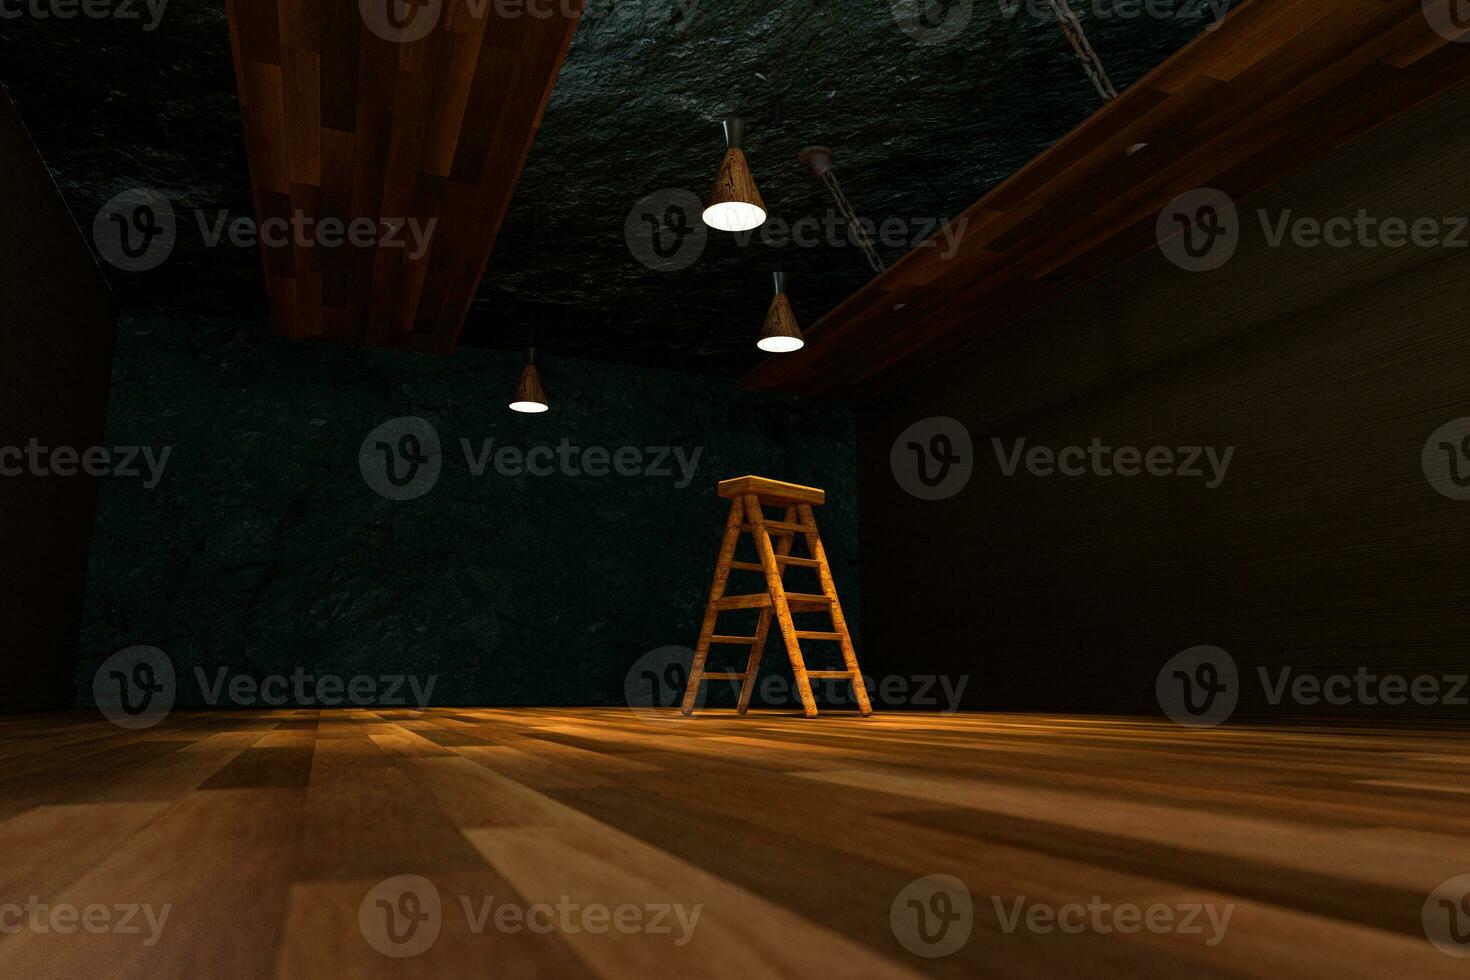 trä- källare med stege och tak lampa inuti, årgång lager, 3d tolkning. foto